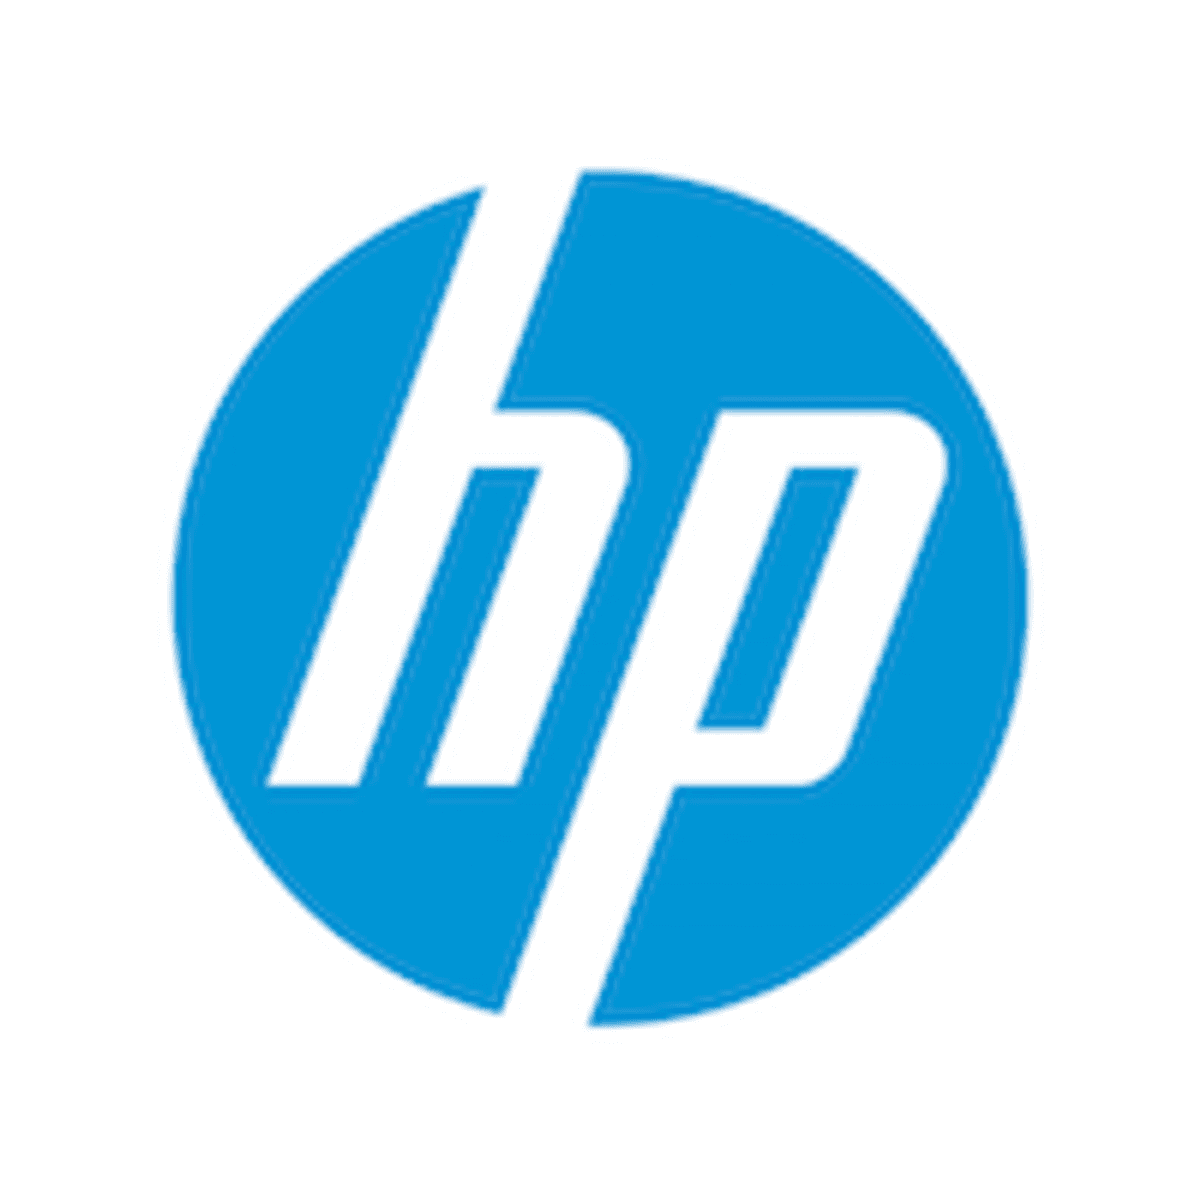 HP uit zorgen over financiële cijfers Xerox image